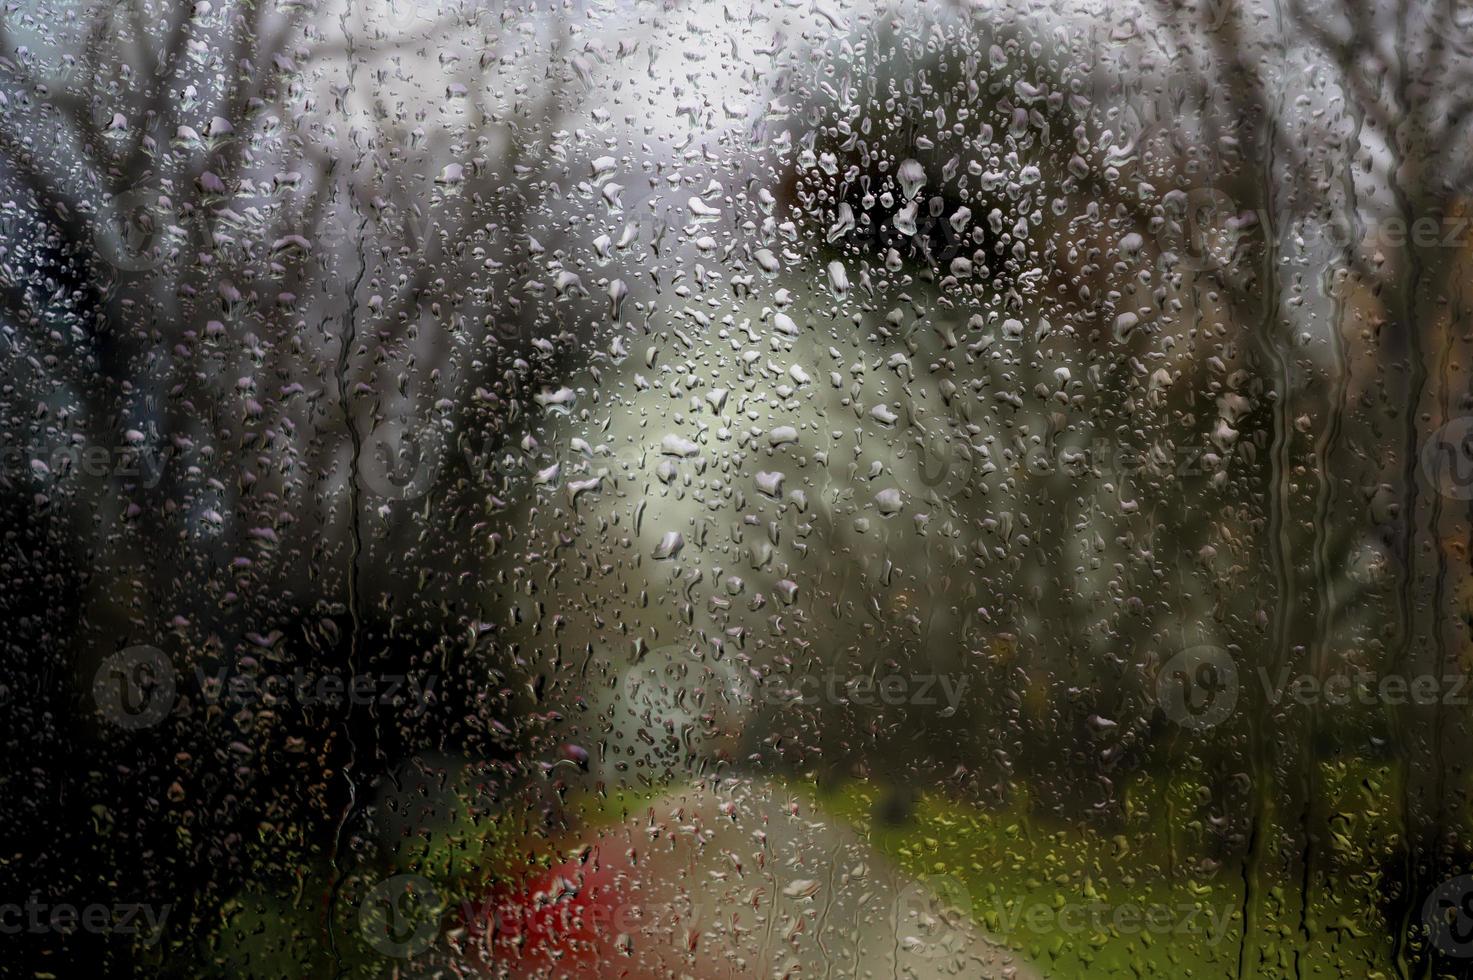 fenêtre pluvieuse, gouttes de pluie d'automne sur le verre sur fond de nature terne avec des arbres et un sentier. photo